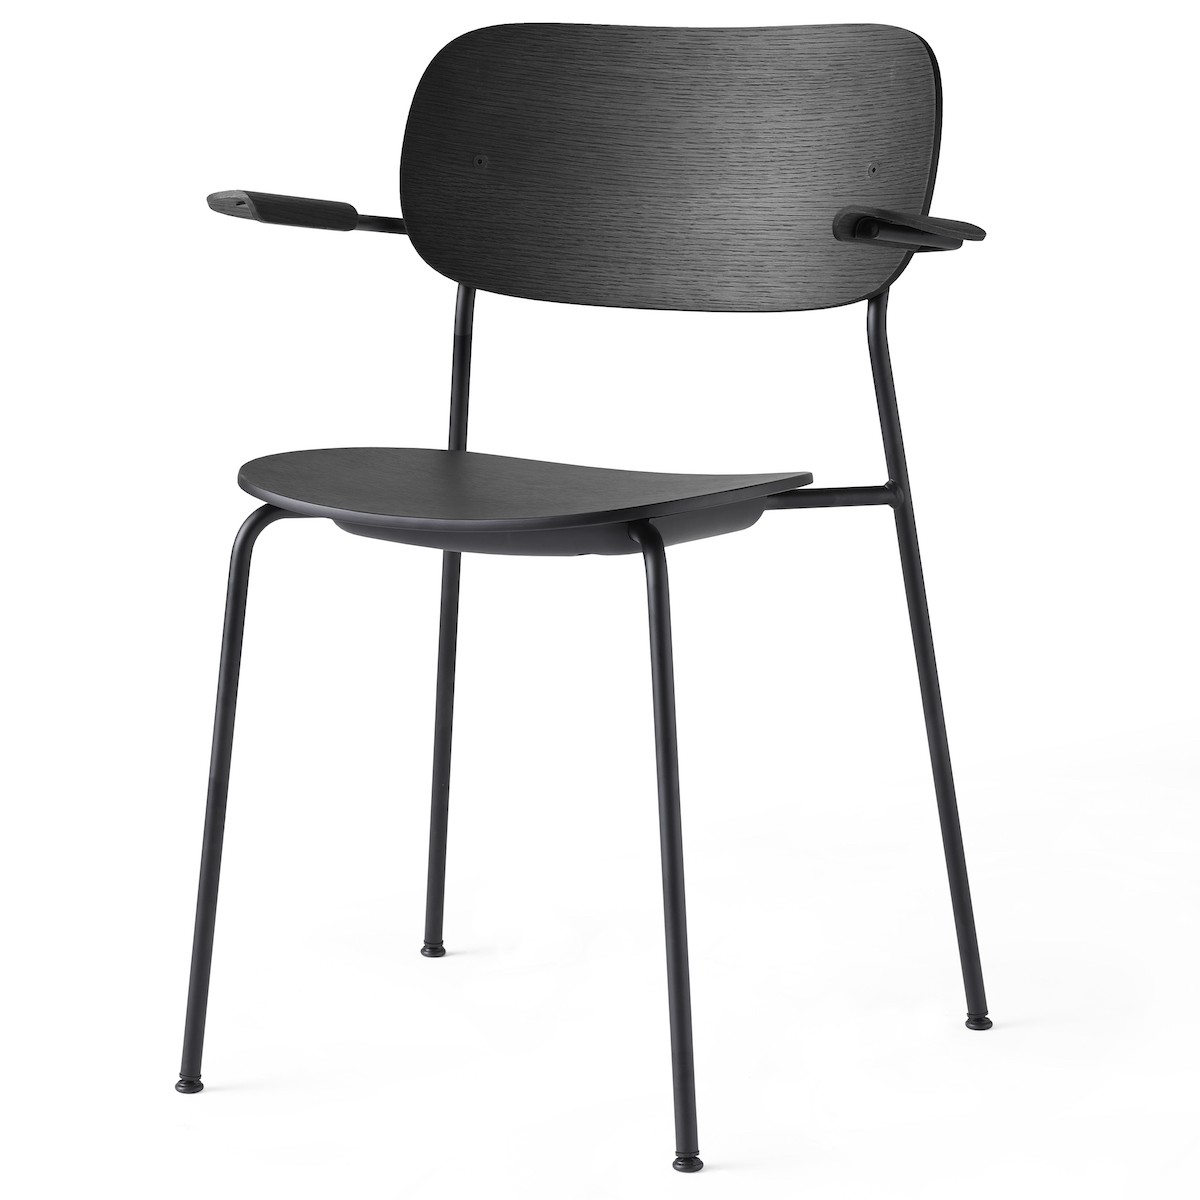 with armrests - black oak / black frame - Co chair